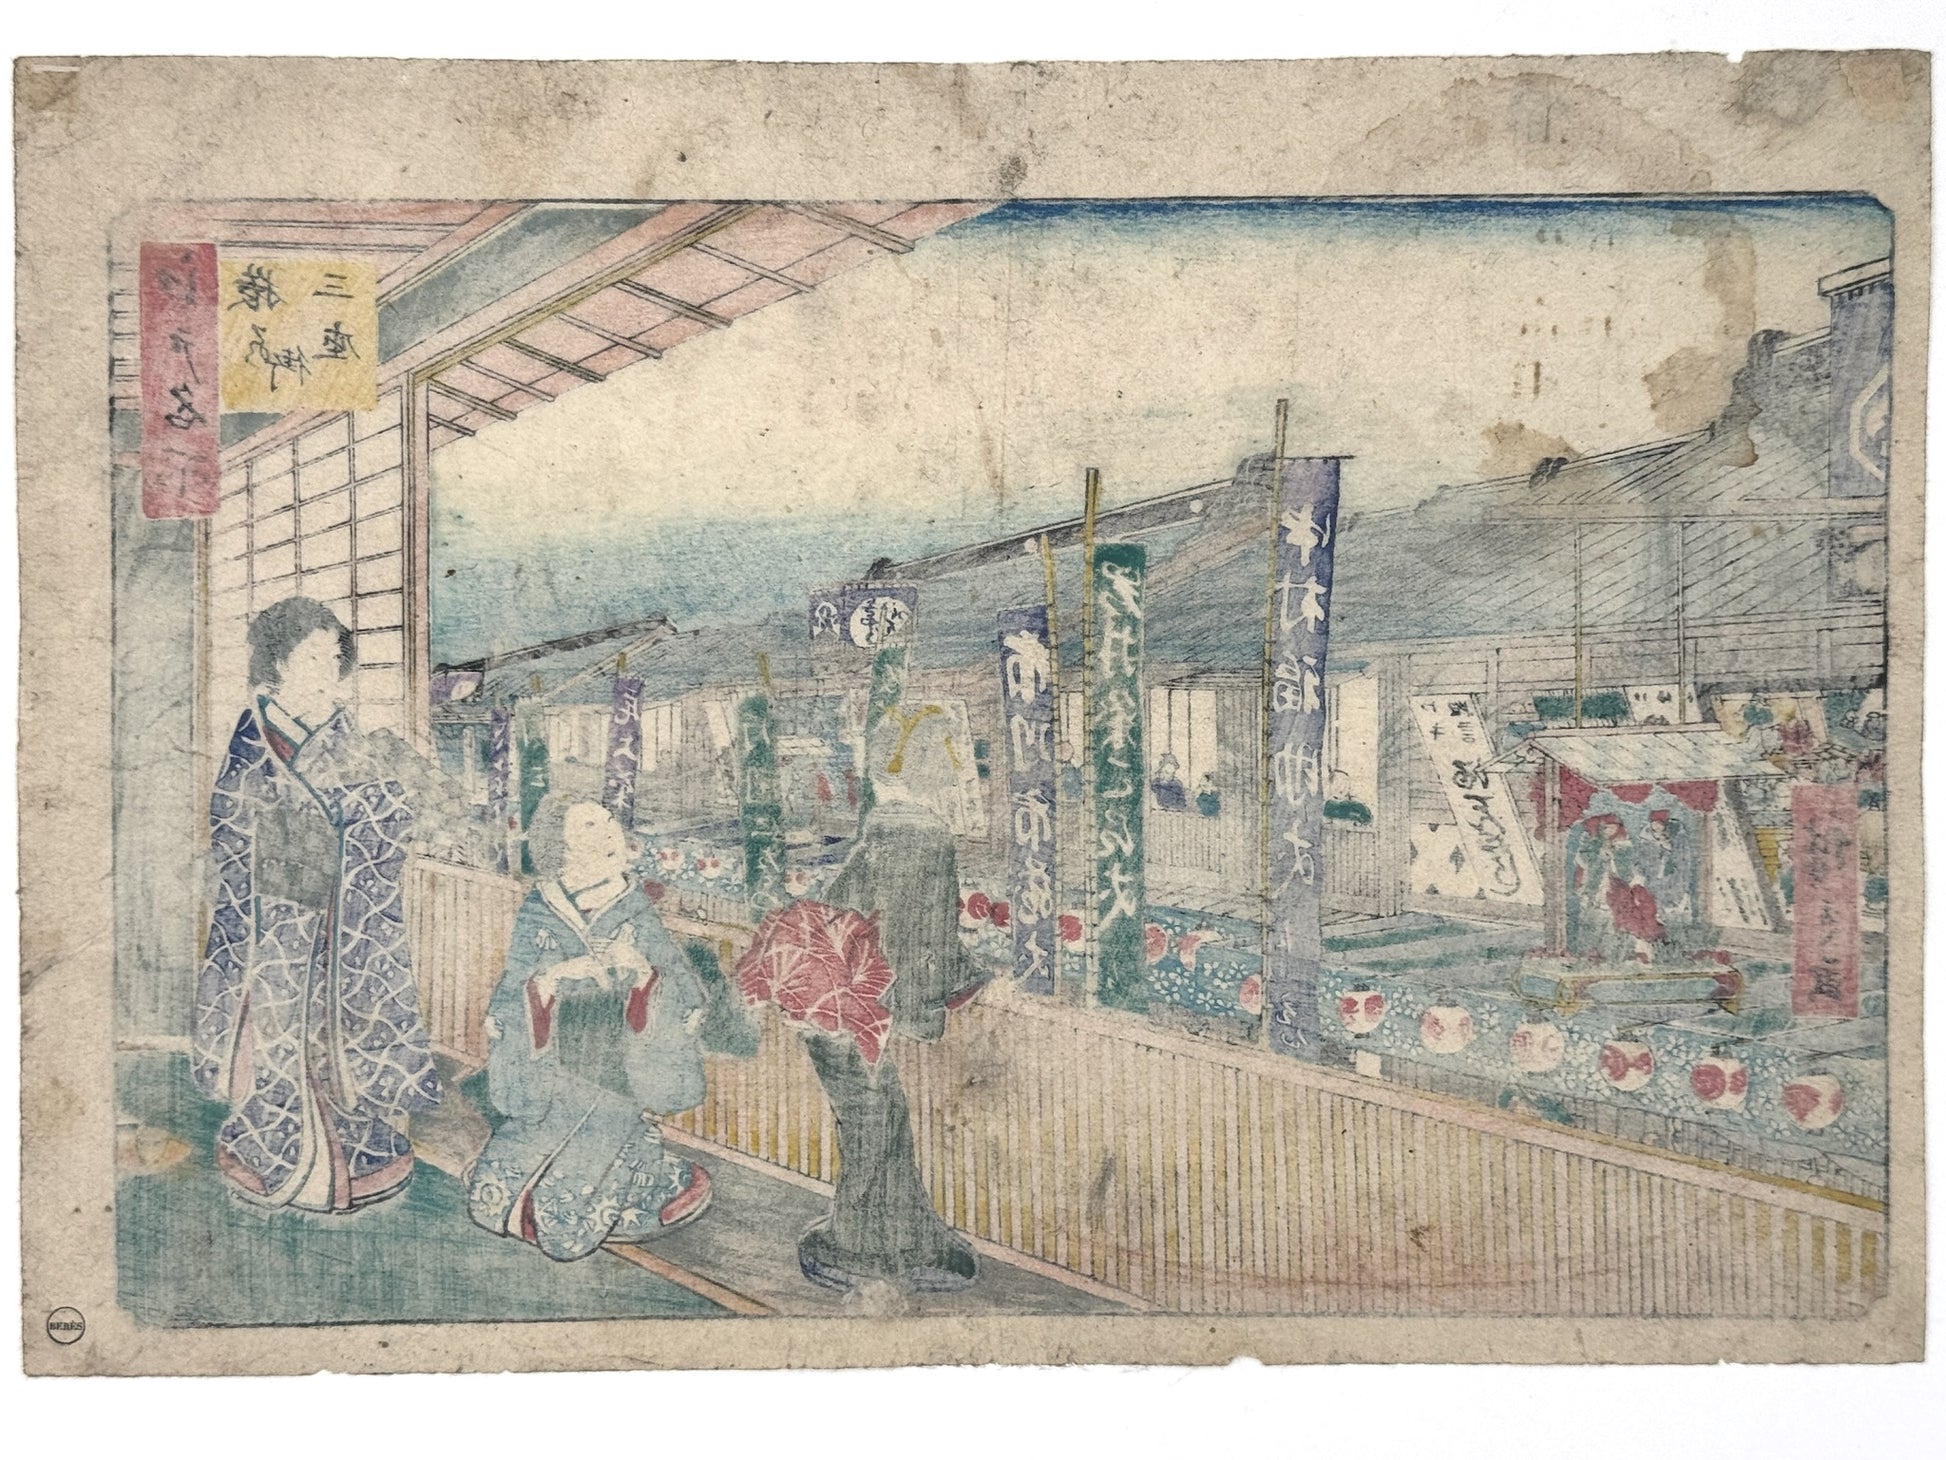 estampe japonaise hiroshige, trois femmes en kimono regarde par la fenêtre, théâtres kabuki et bannières, dos estampe